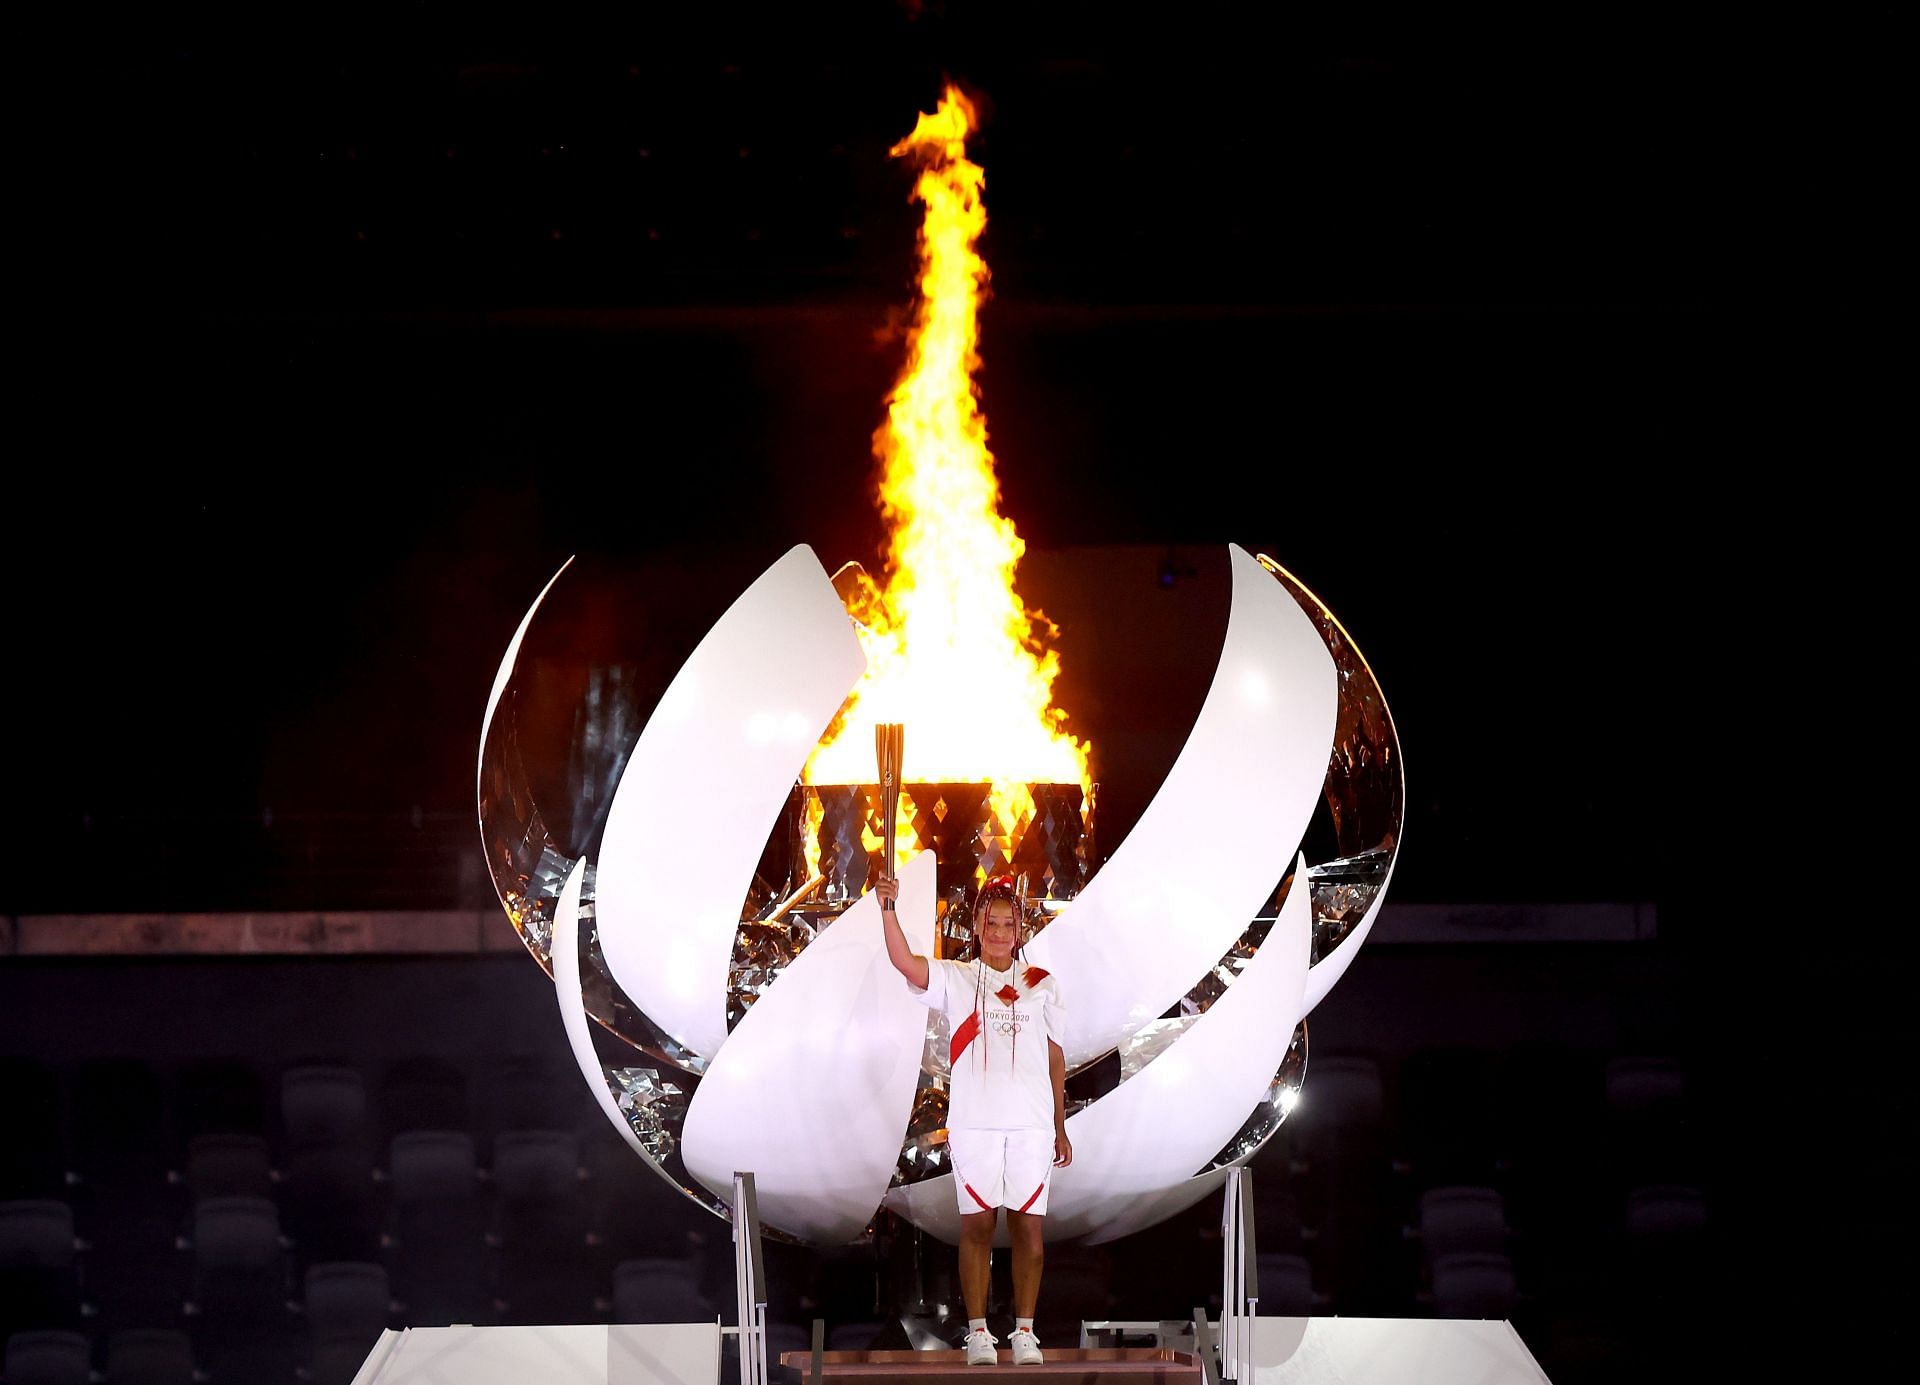 Naomi Osaka lit the Olympic cauldron at the Tokyo Olympics